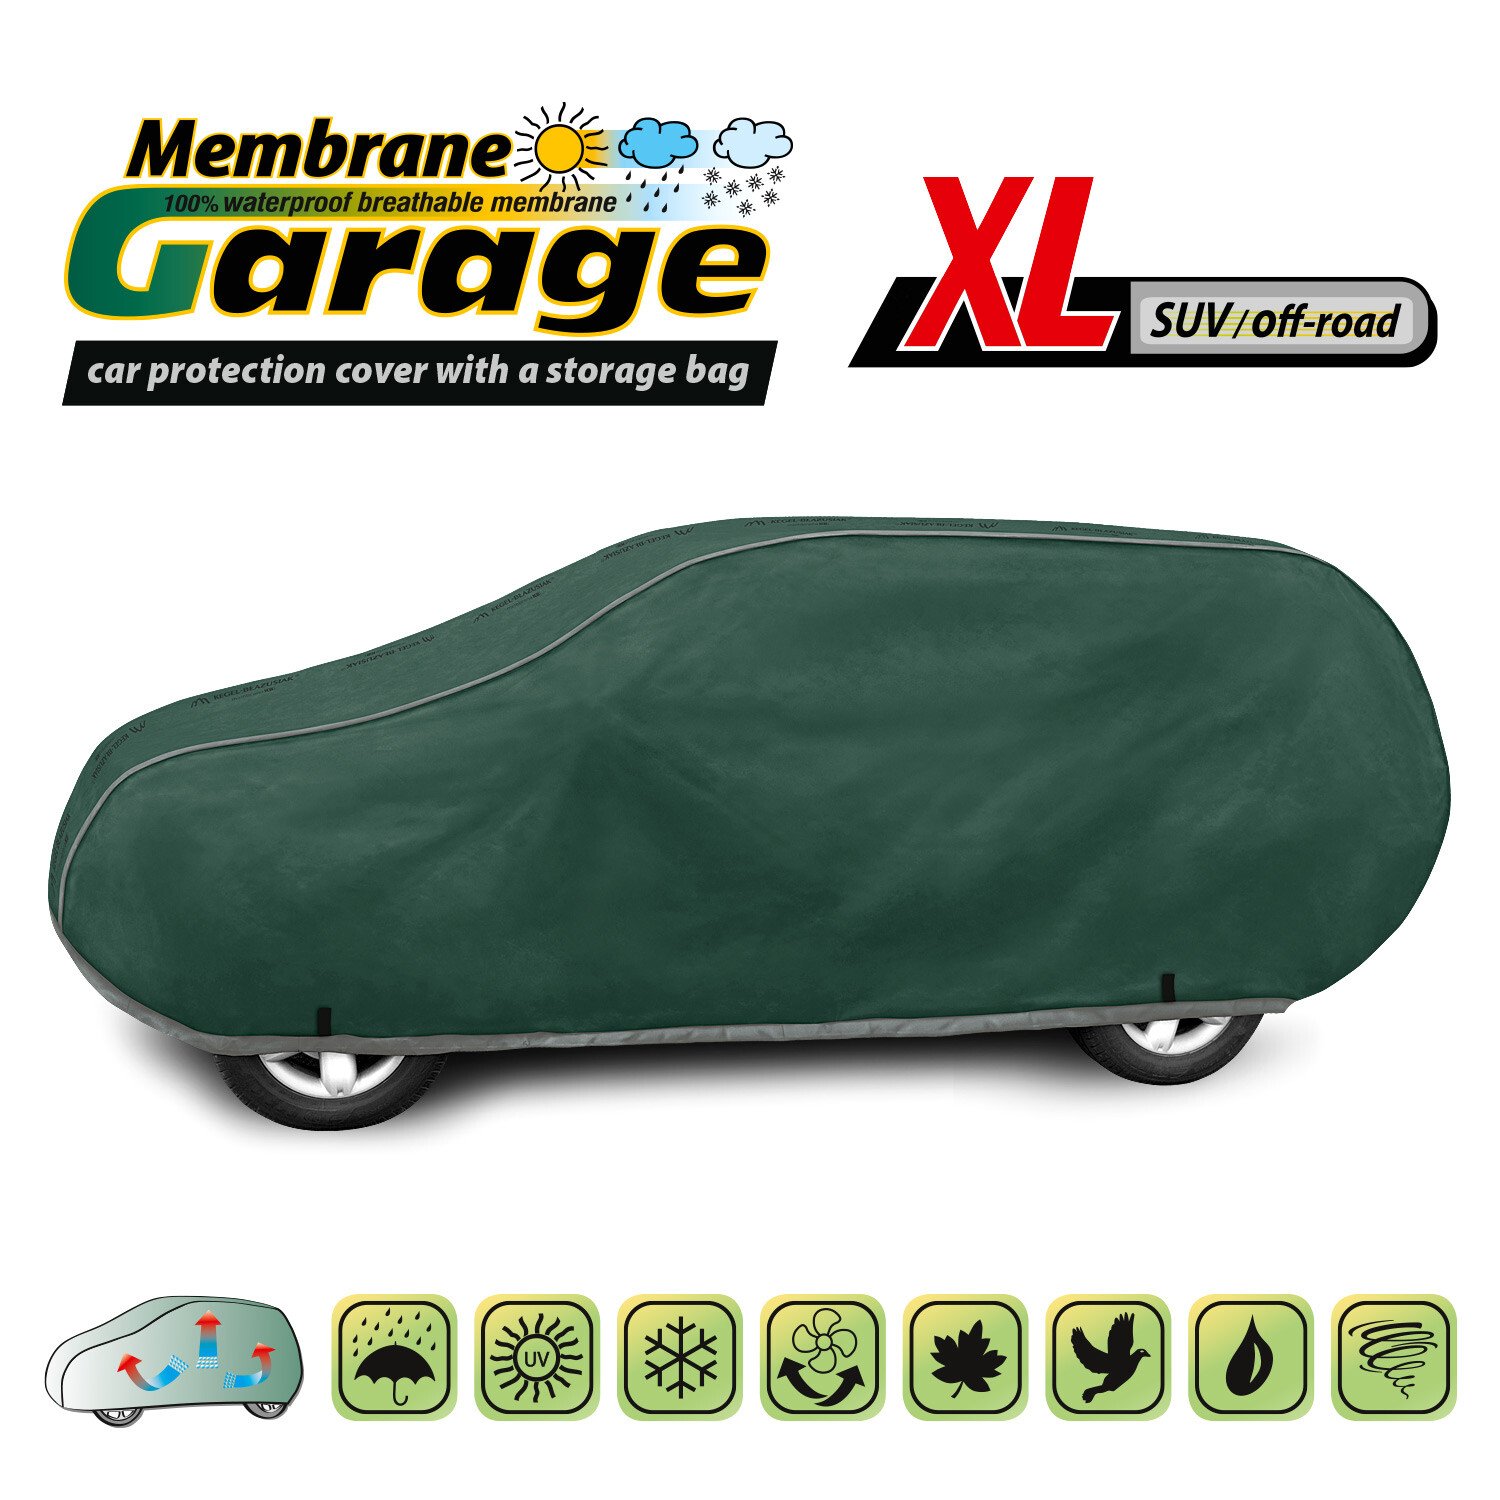 Prelata auto completa Membrane Garage, complet impermeabila si respirabila - XL - SUV/Off-Road thumb